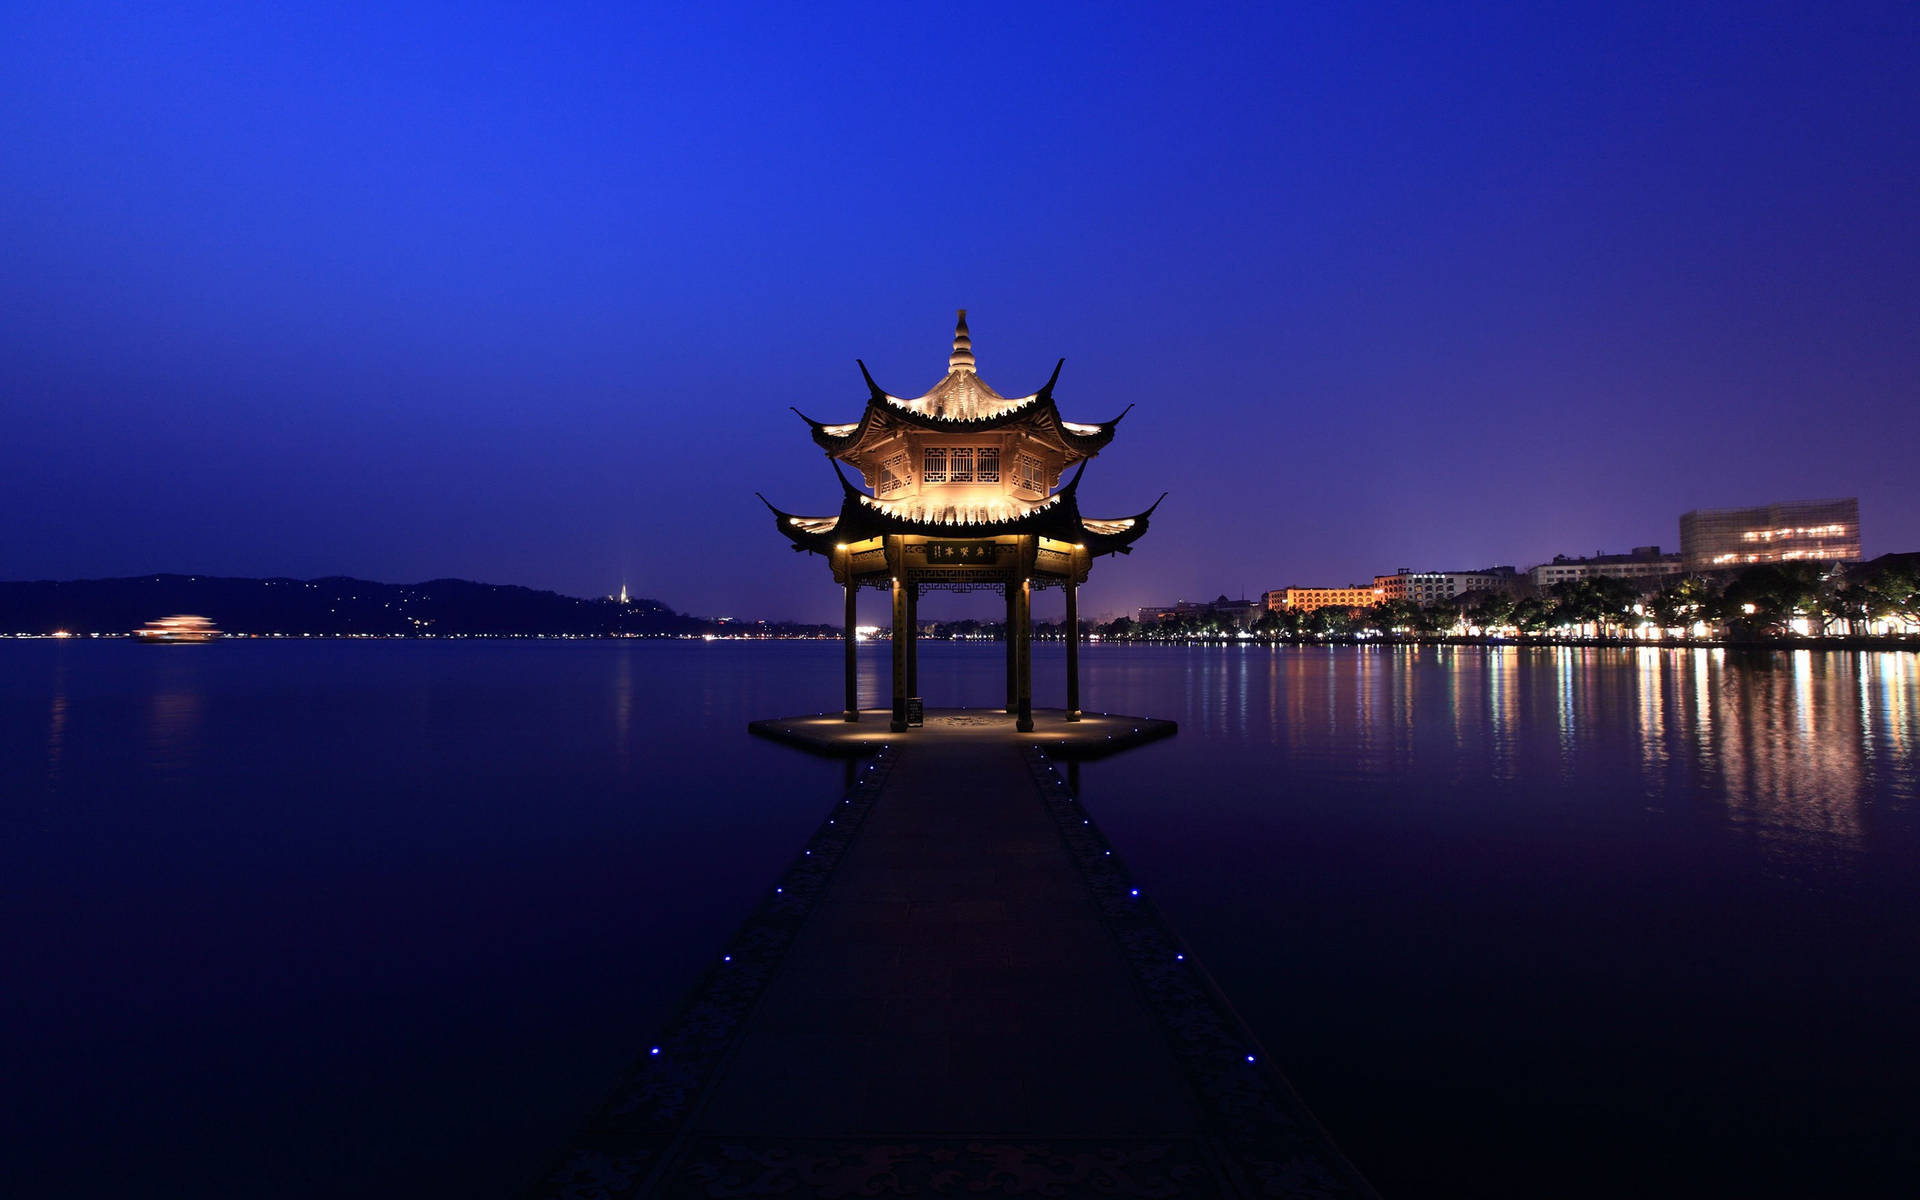 Hangzhou Xi Lake